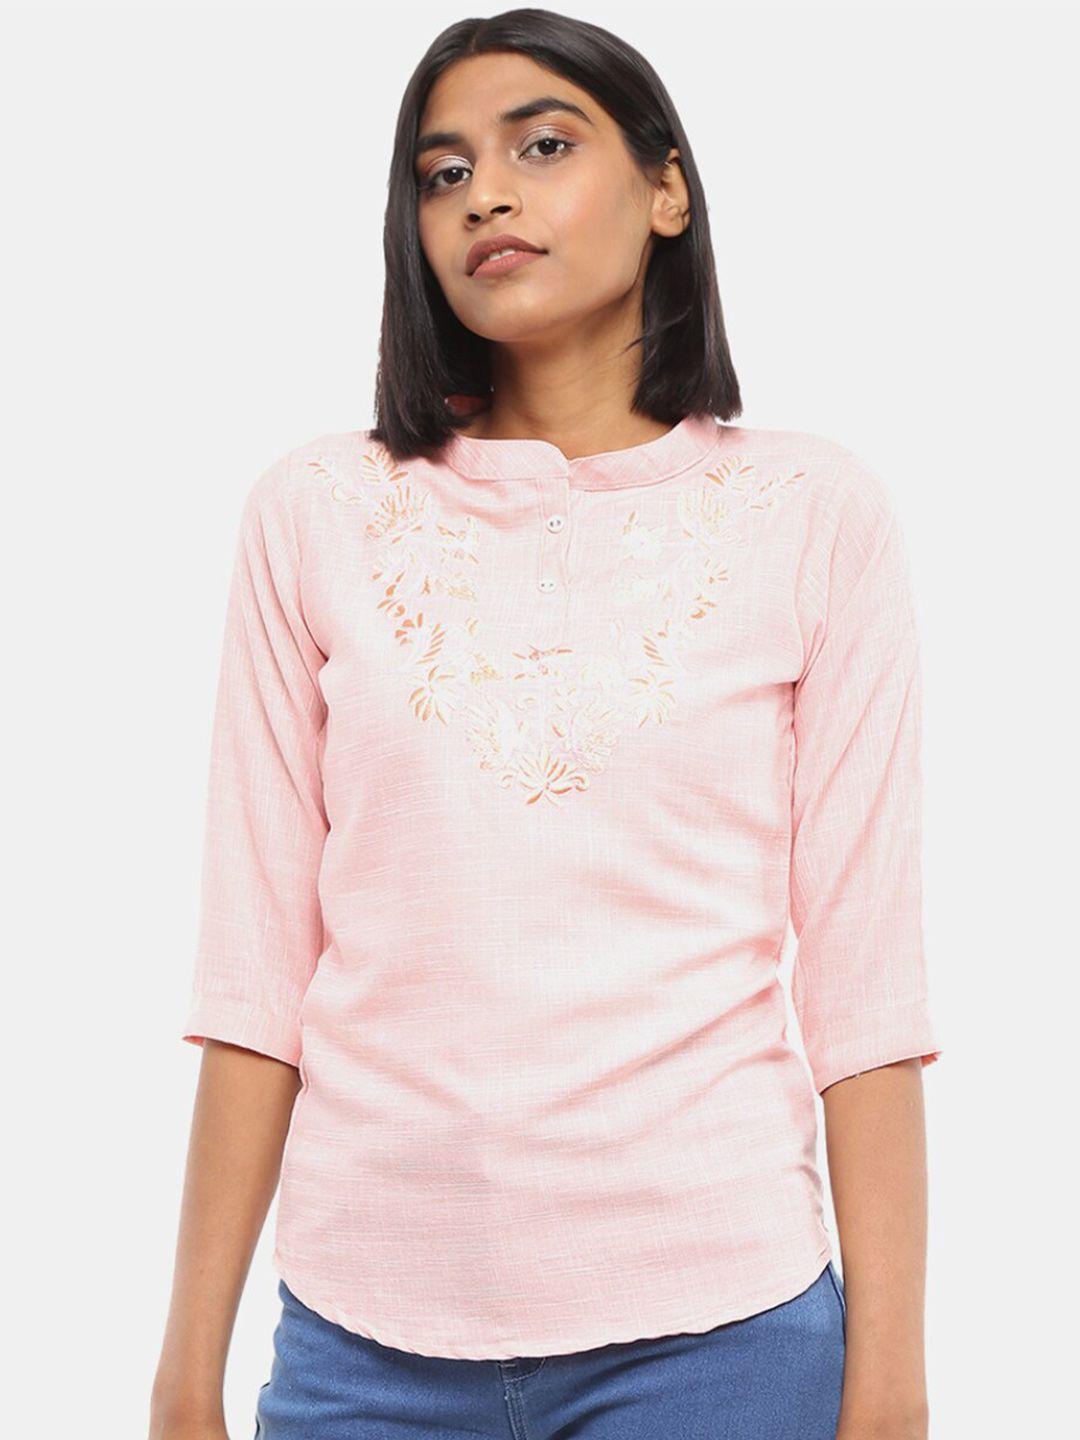 v-mart-women-pink-floral-embroidered-top